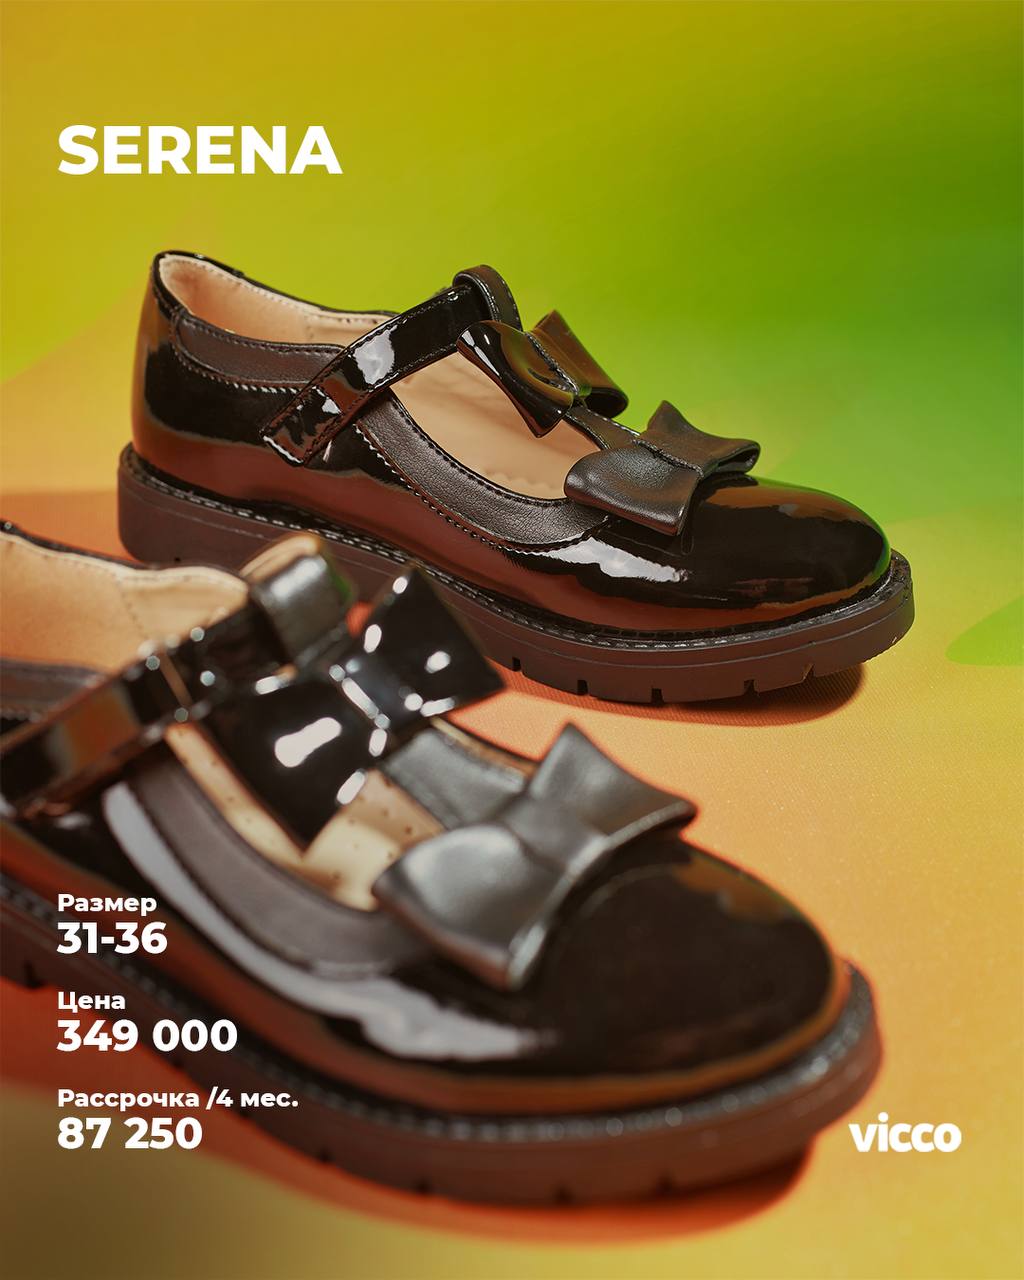  Купить школьную обувь - Коллекция Serena